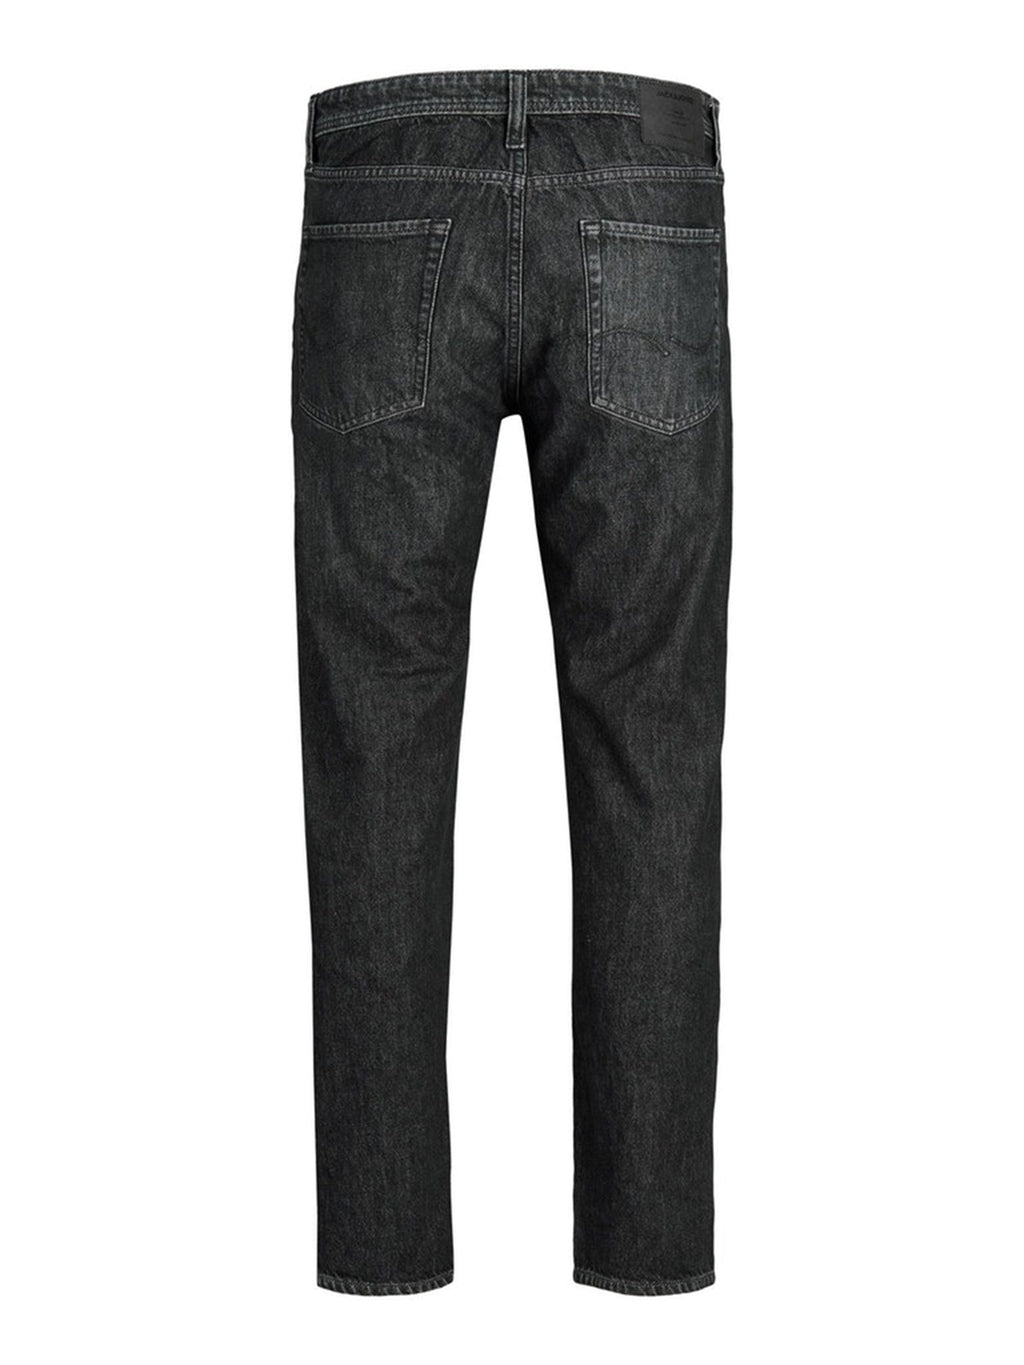 Jeans original de Chris MF993 - Denim negro